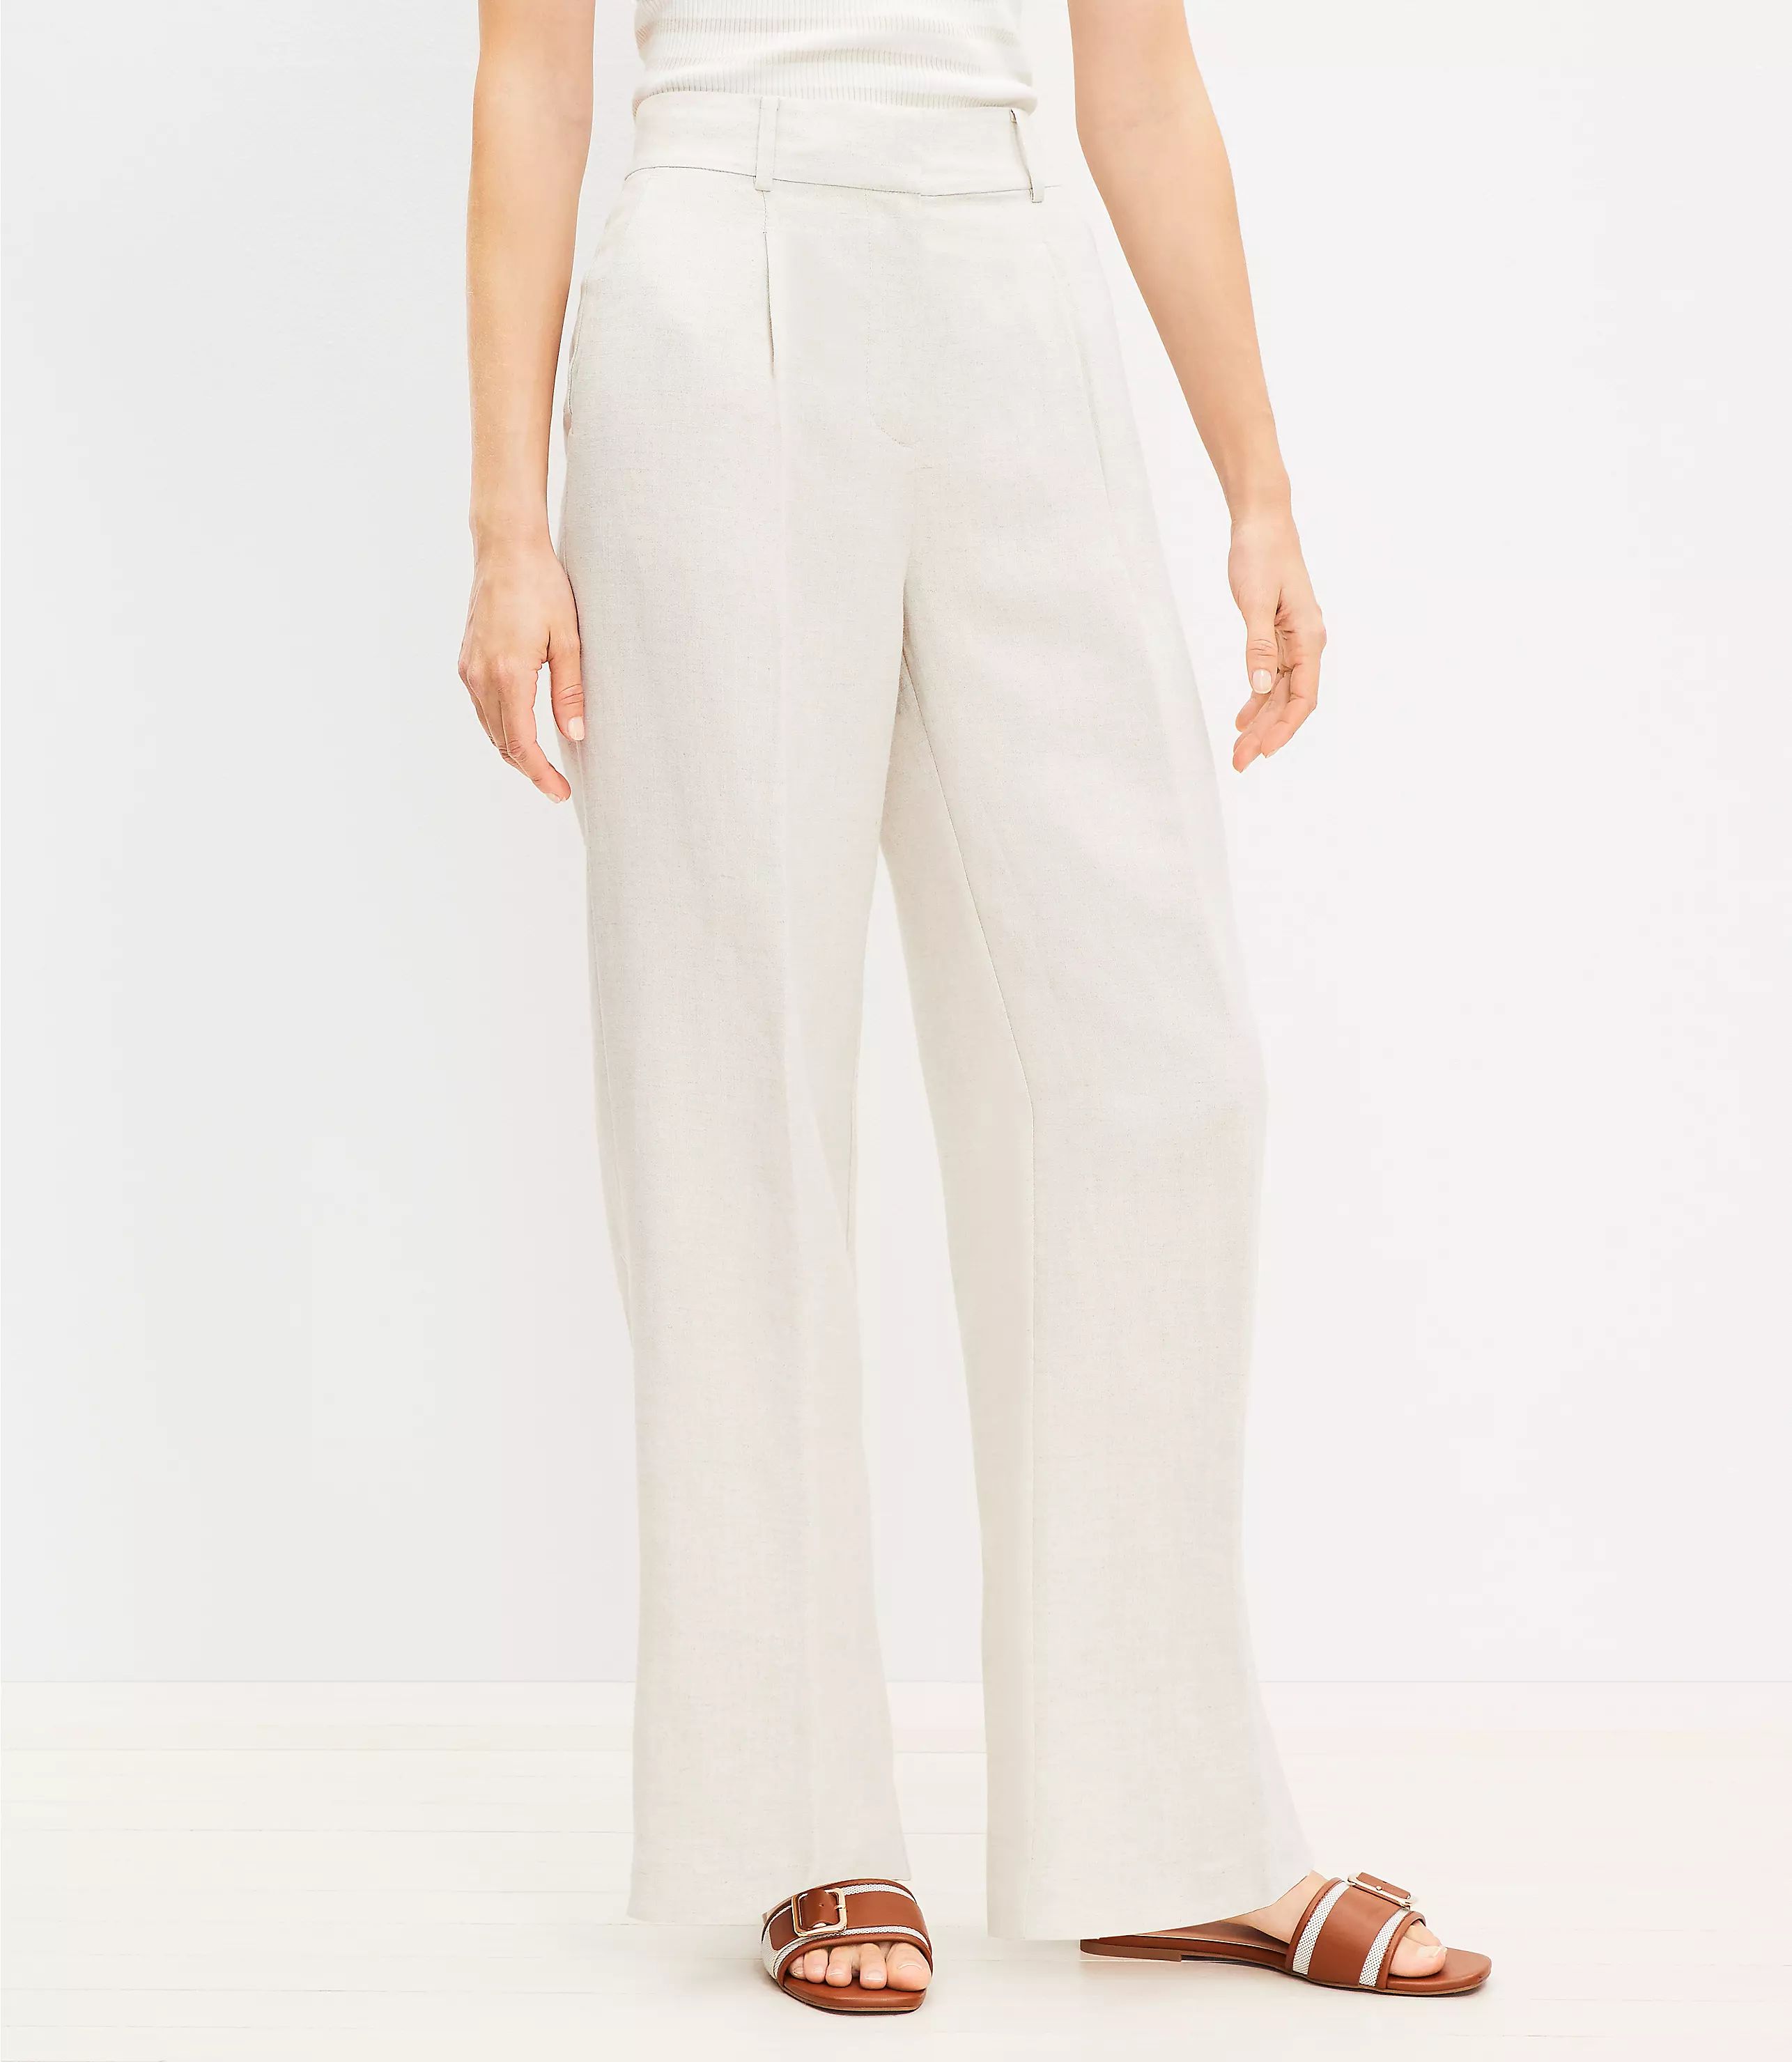 Petite Peyton Trouser Pants in Linen Blend | LOFT